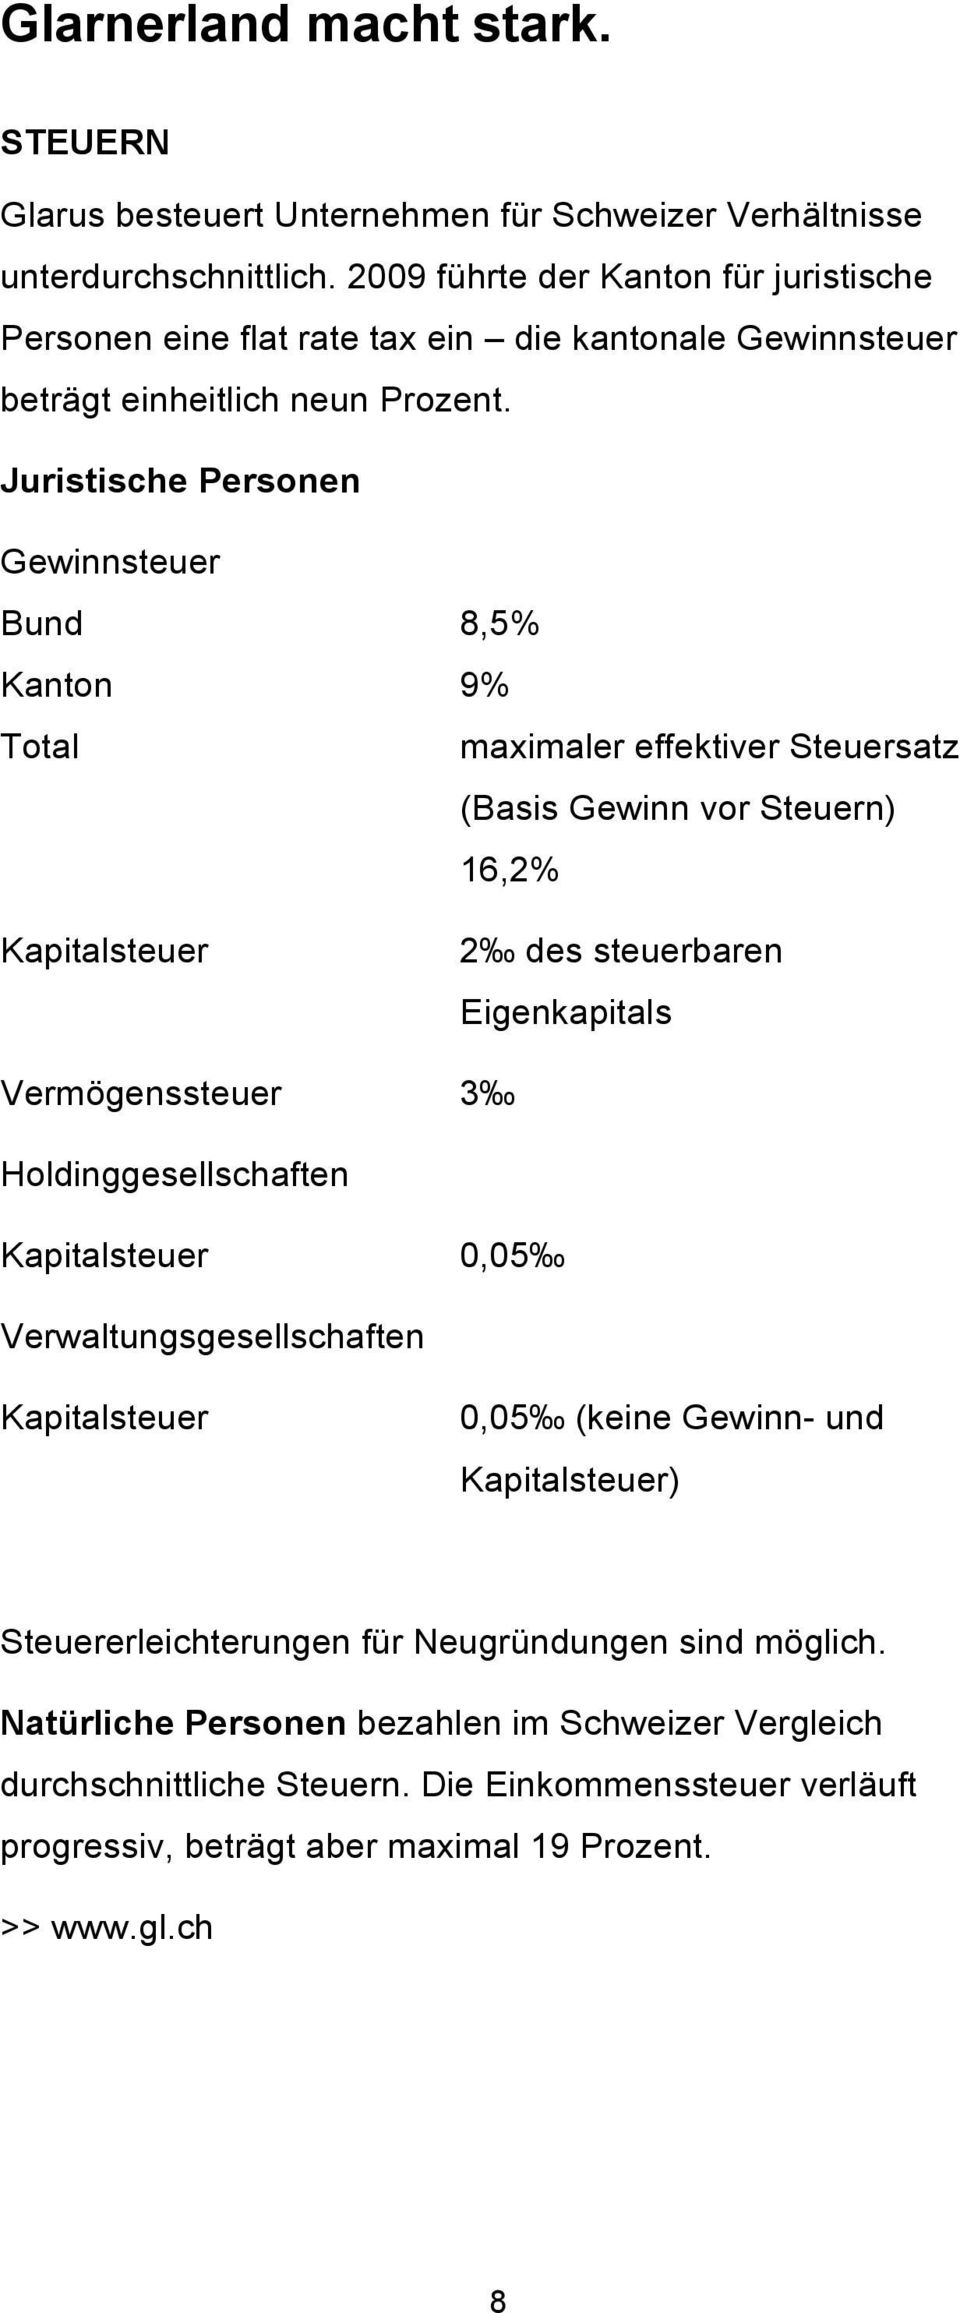 Juristische Personen Gewinnsteuer Bund Kanton Total Kapitalsteuer 8,5% 9% maximaler effektiver Steuersatz (Basis Gewinn vor Steuern) 16,2% 2 des steuerbaren Eigenkapitals Vermögenssteuer 3